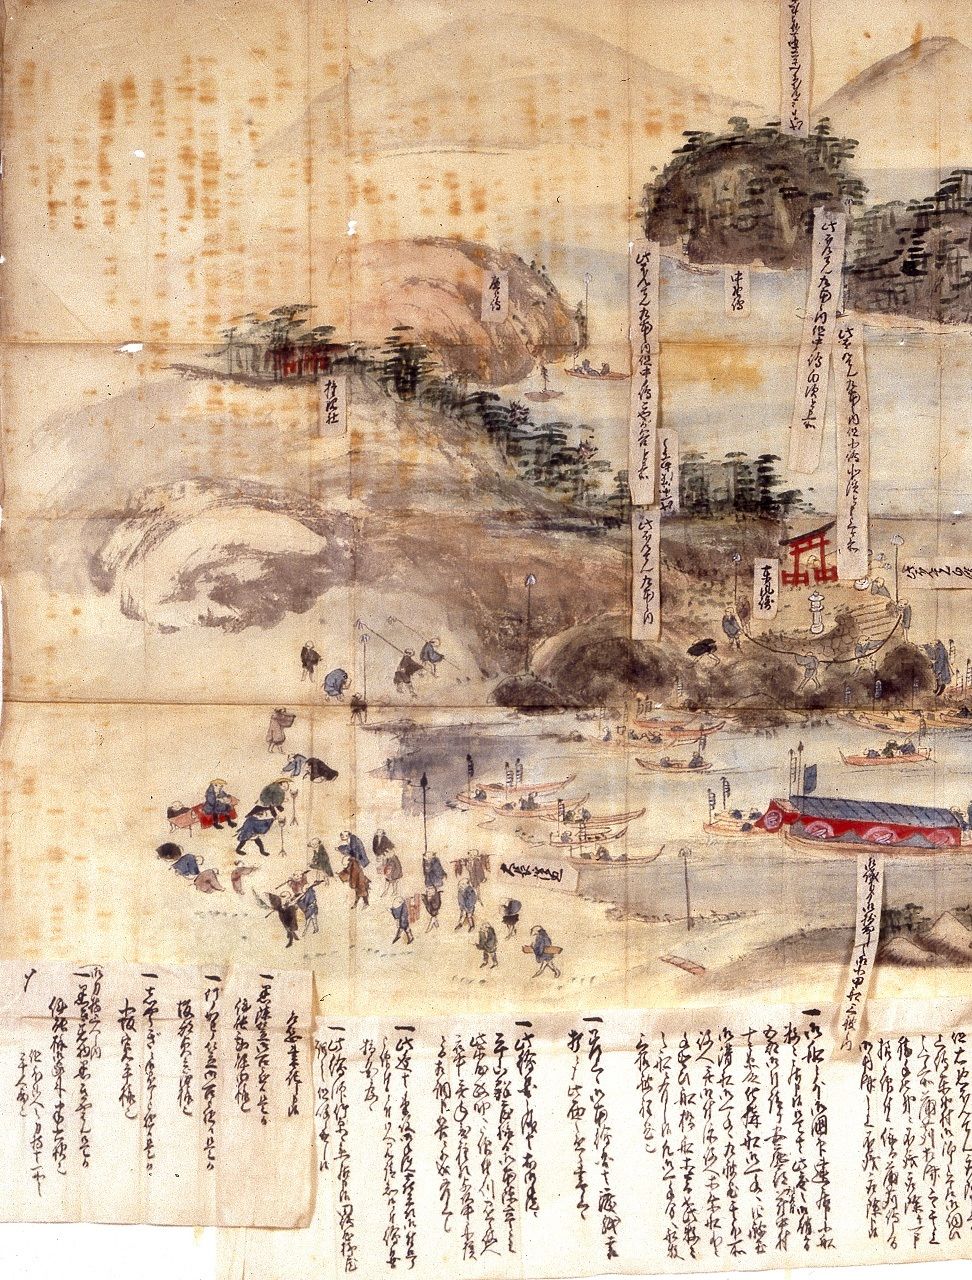 Mitarai sokuryō no zu representa al equipo de Inō Tadataka realizando las mediciones del puerto de Mitarai, en la isla de Ōsaki-Shimojima (Kure, prefectura de Hiroshima), en 1806. (Imagen cortesía del Ayuntamiento de Kure)